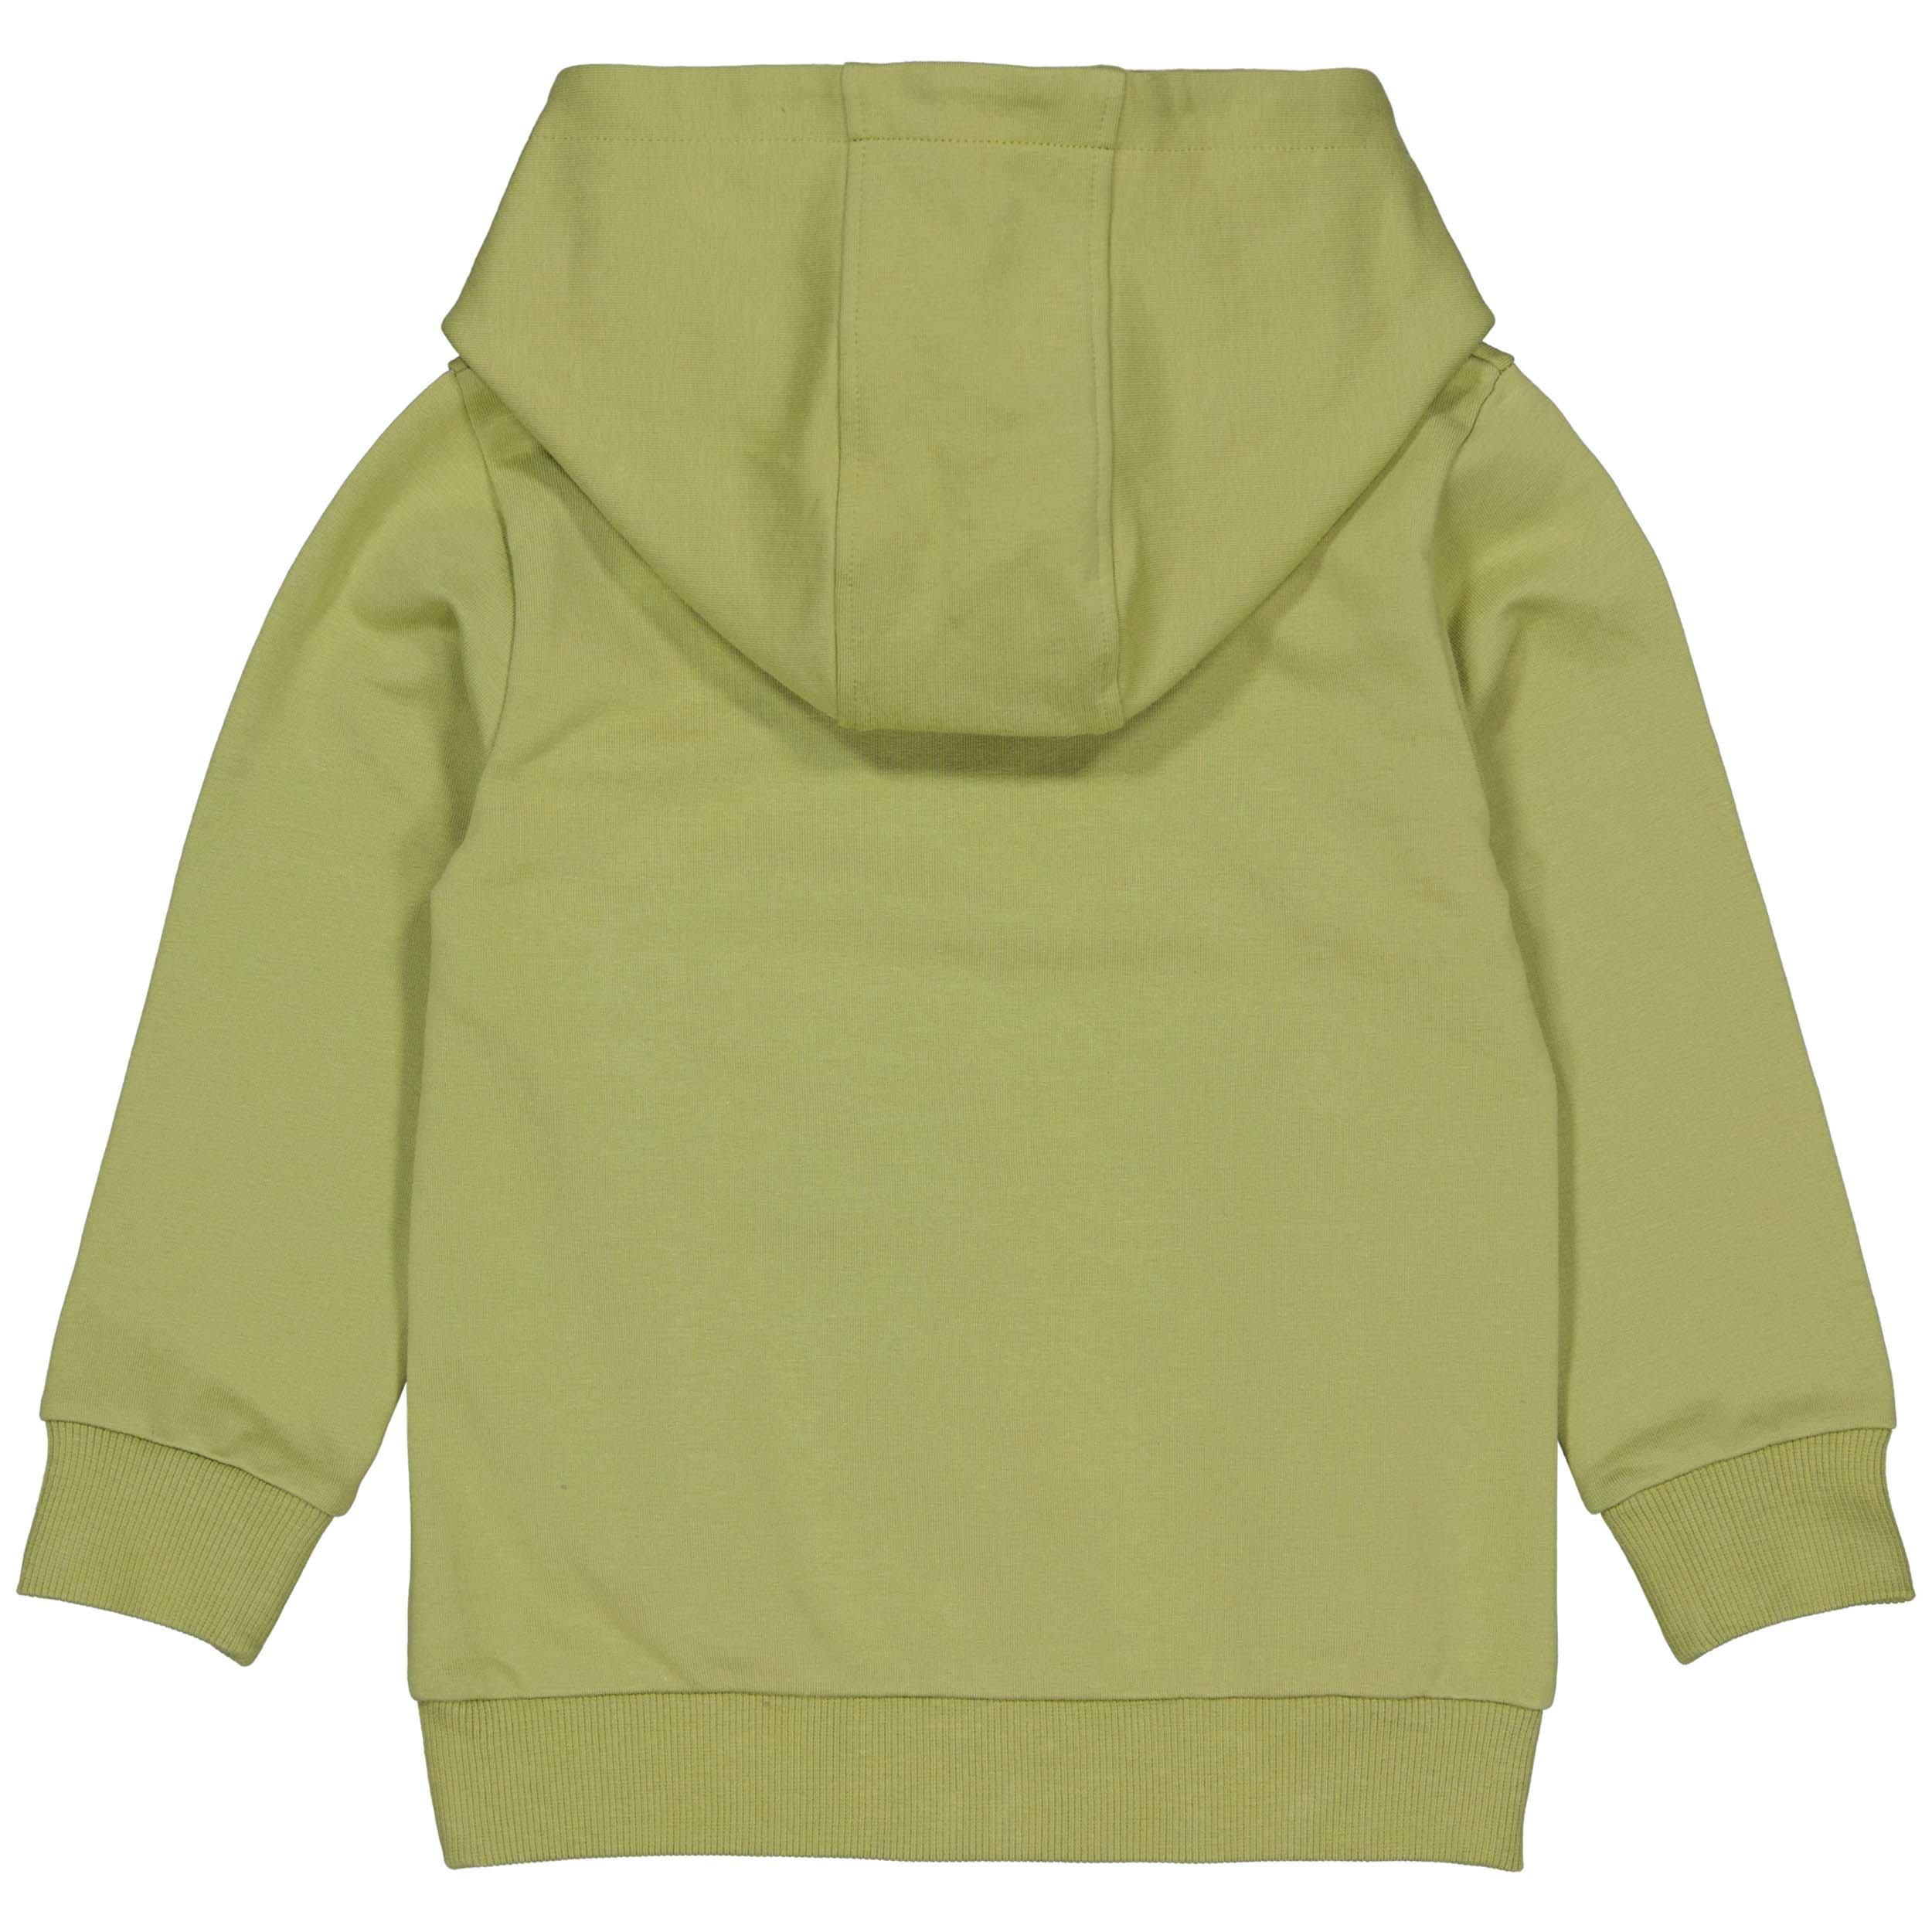 Jongens Sweater BORATW222 van Little Levv in de kleur Olive Light in maat 128.